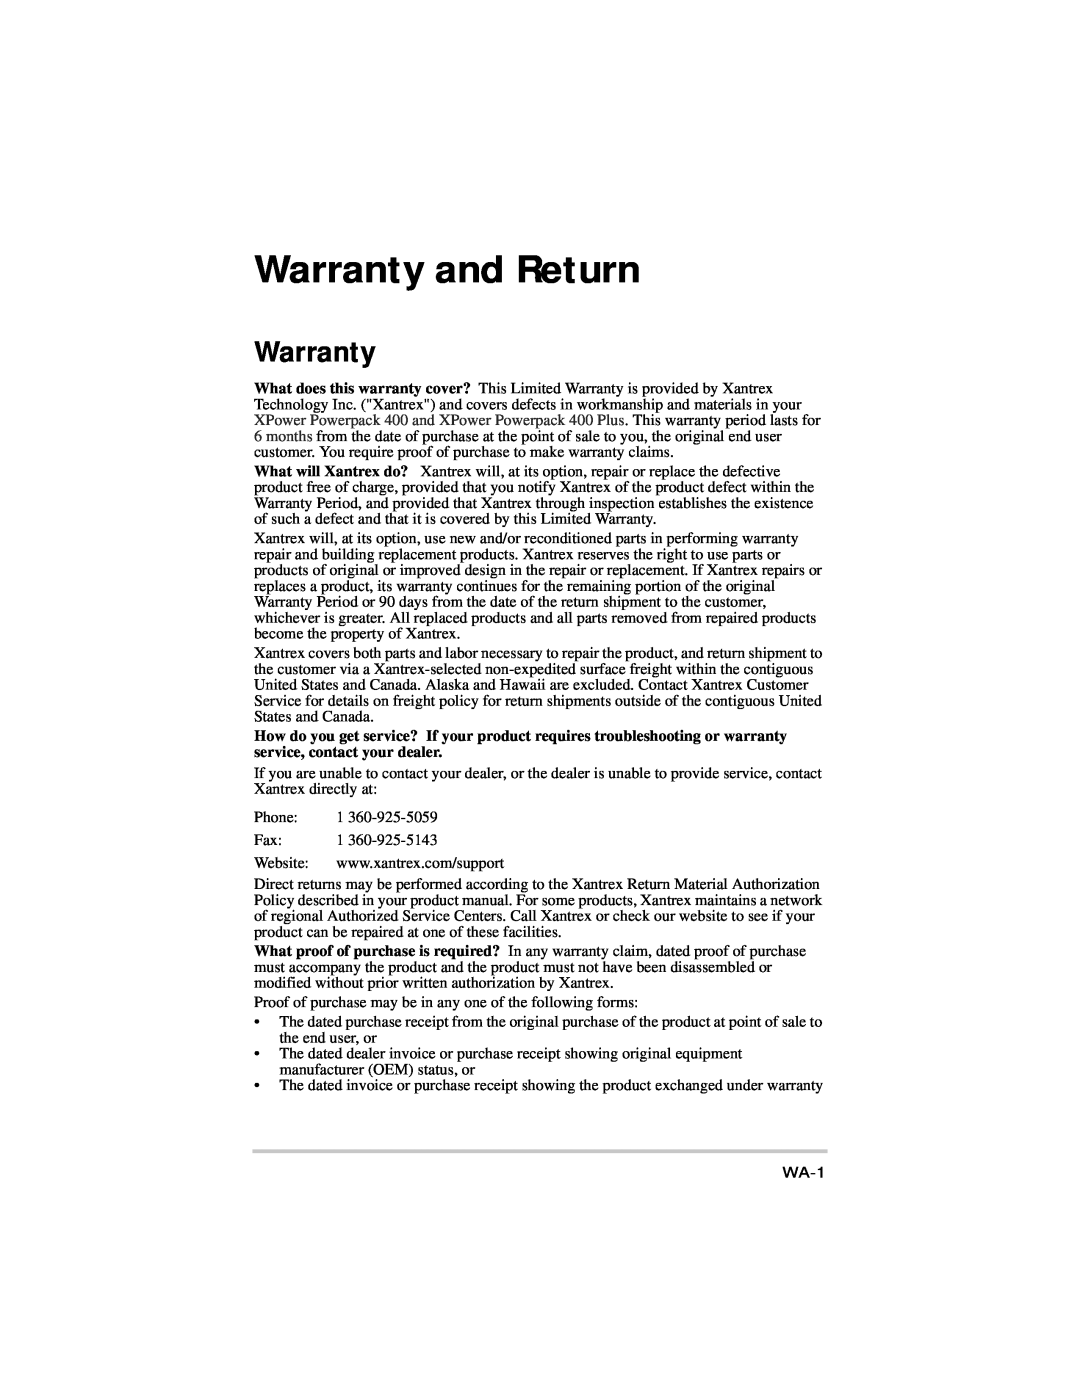 Xantrex Technology 975-0057-01-01 warranty Warranty and Return, WA-1 